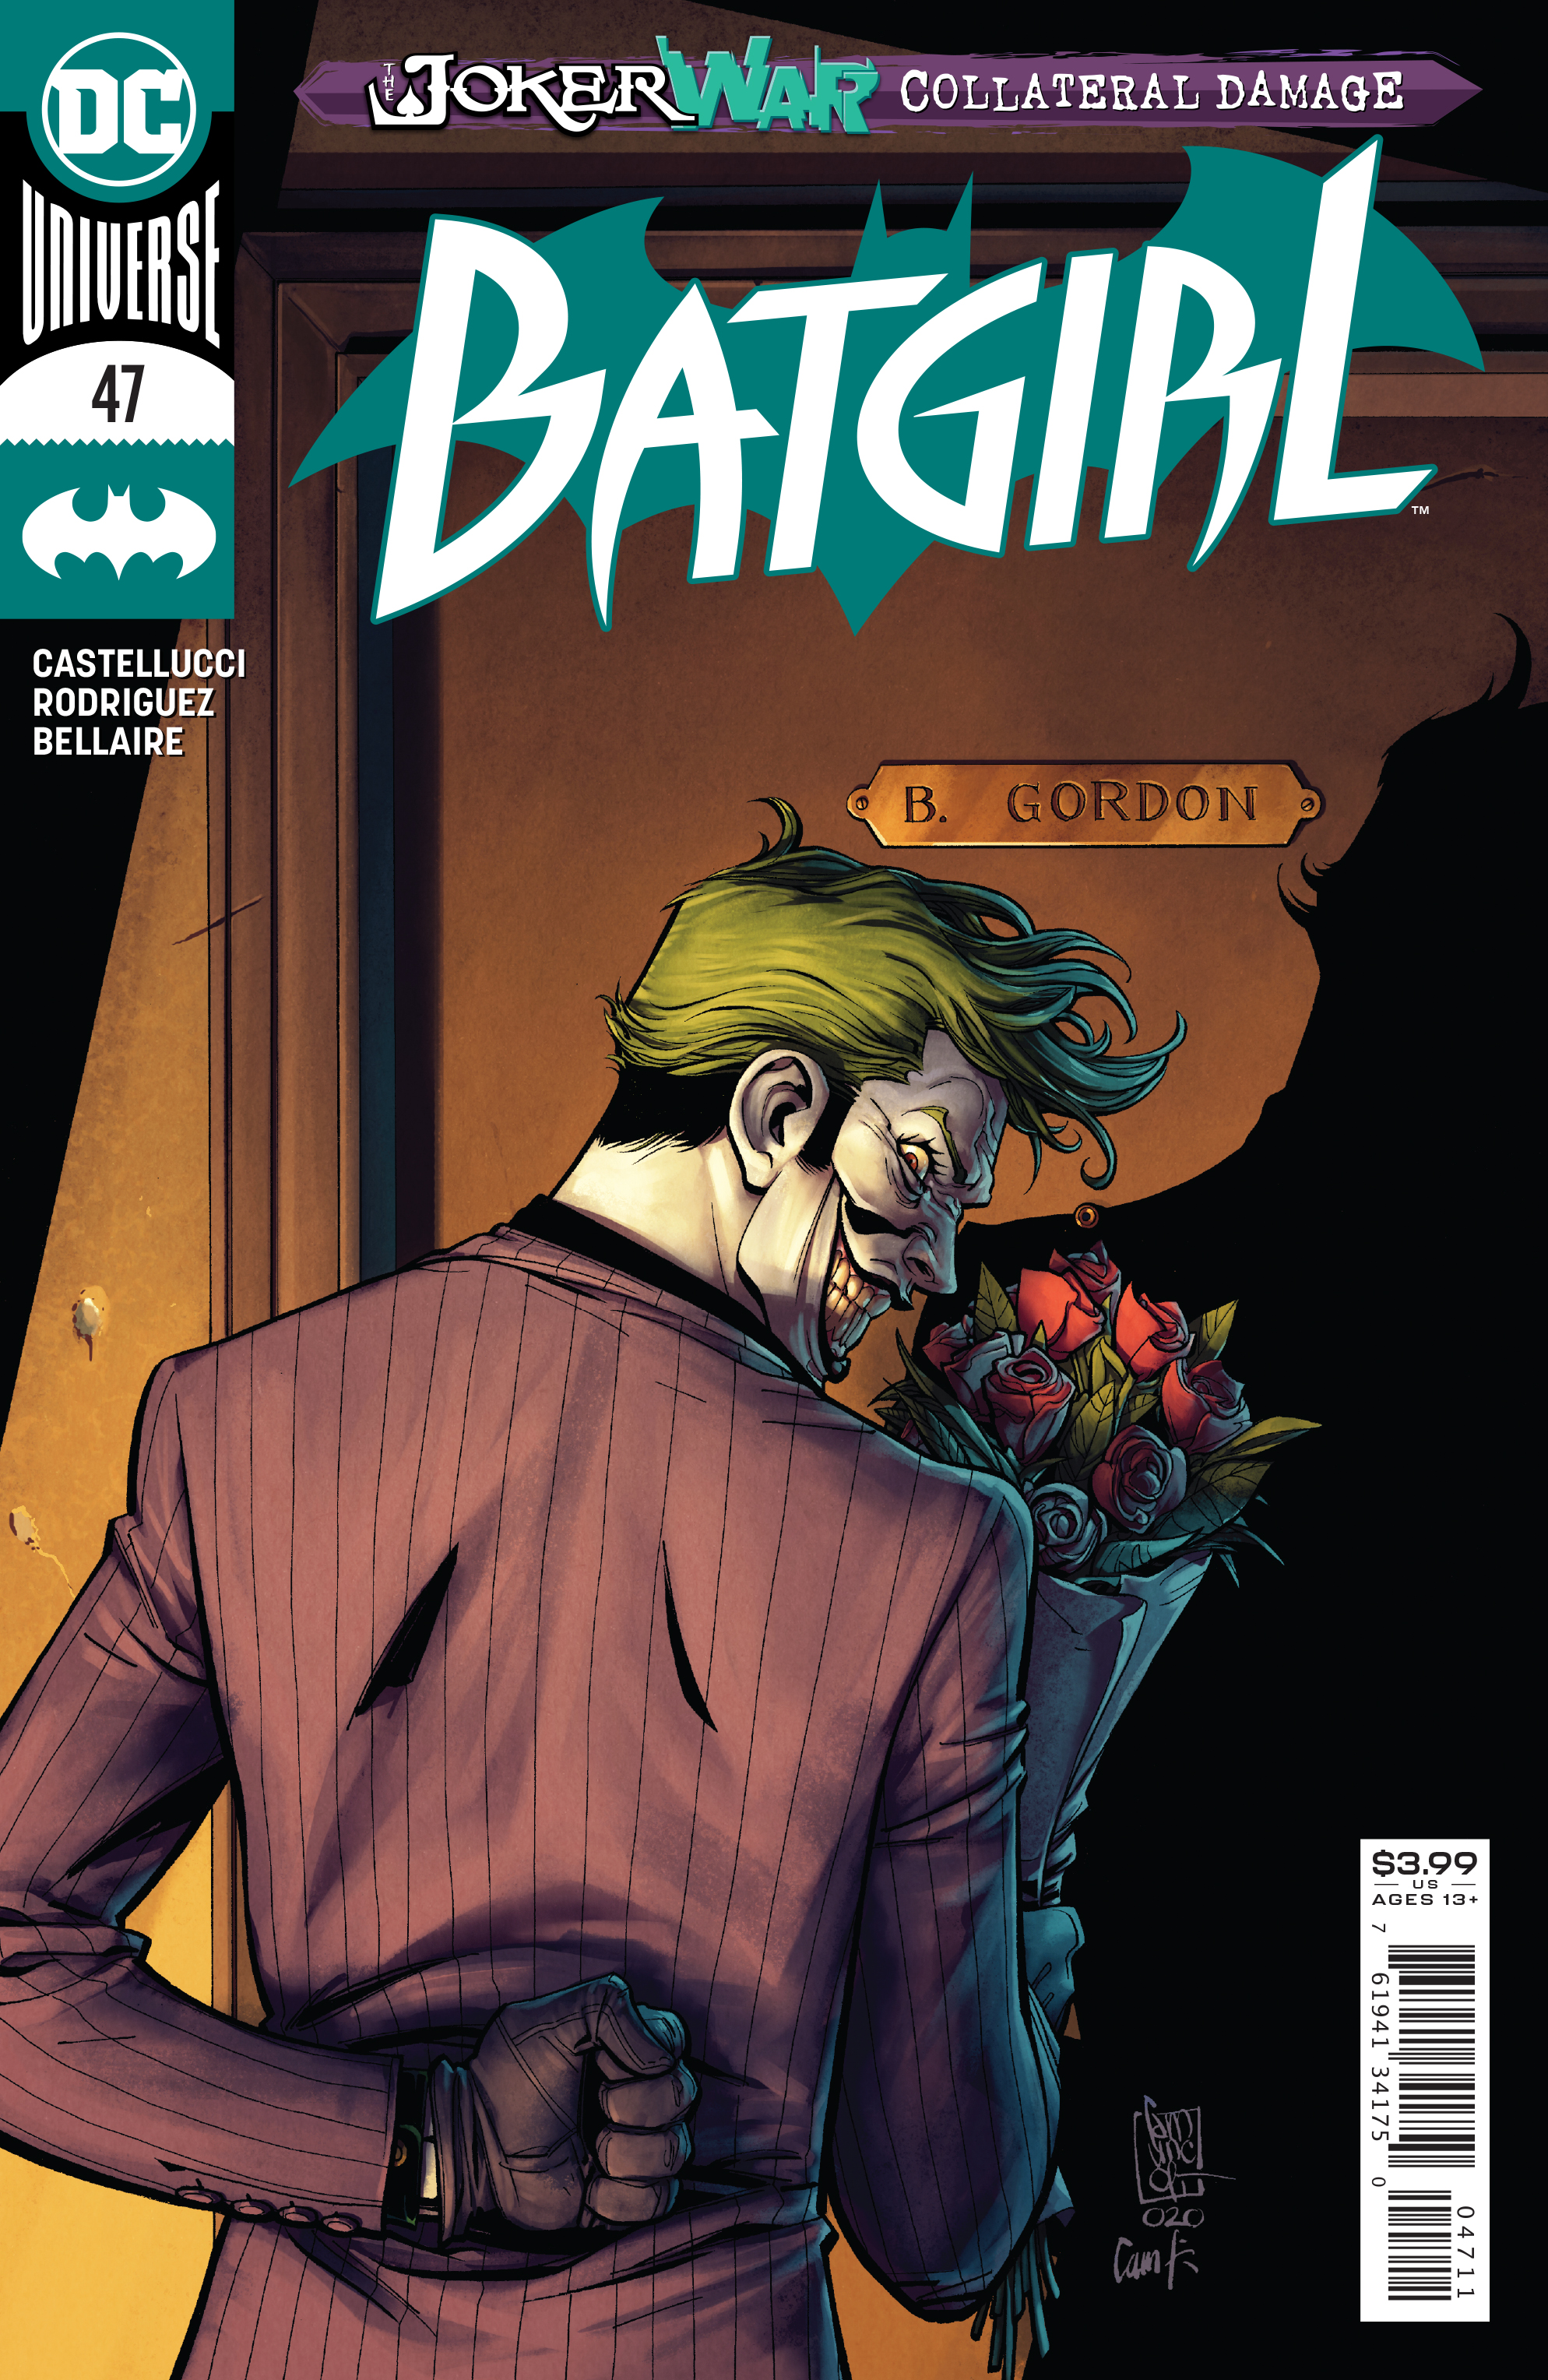 Batgirl #47 Joker War (2016)